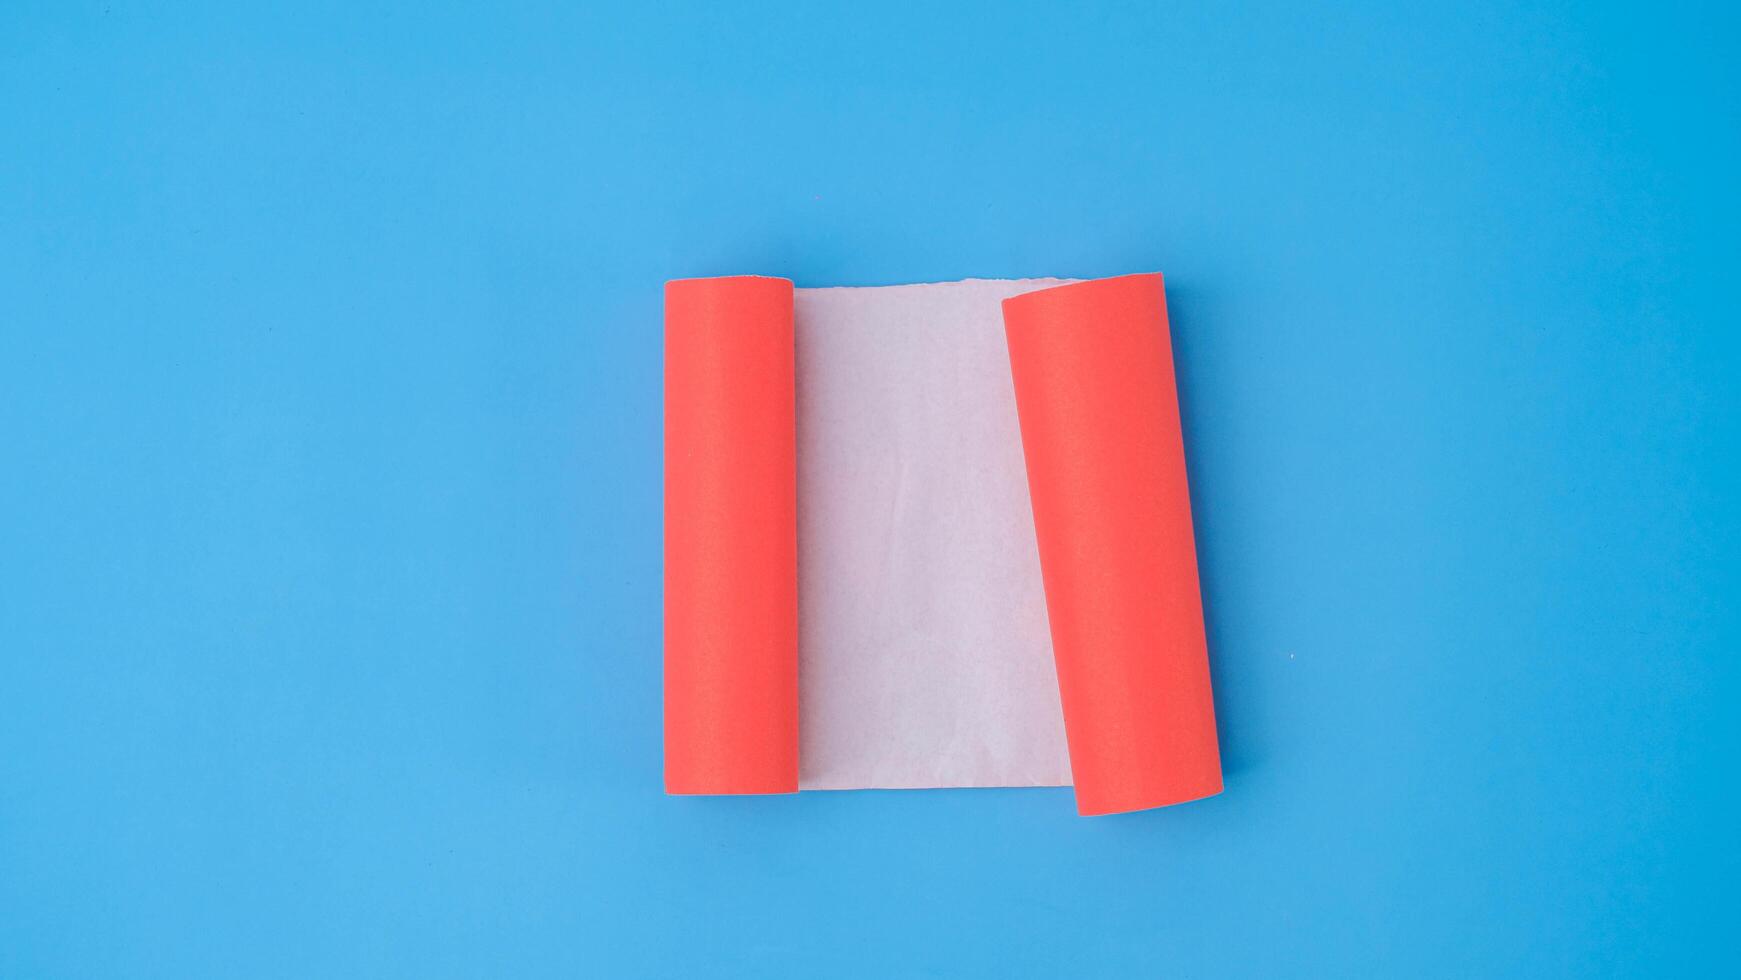 ett orange rullad fyrkant papper är spridning ut in i en tom vit ark på en ljus blå bakgrund. skrynkliga tom vit papper med kopia Plats för text eller reklam Plats. foto